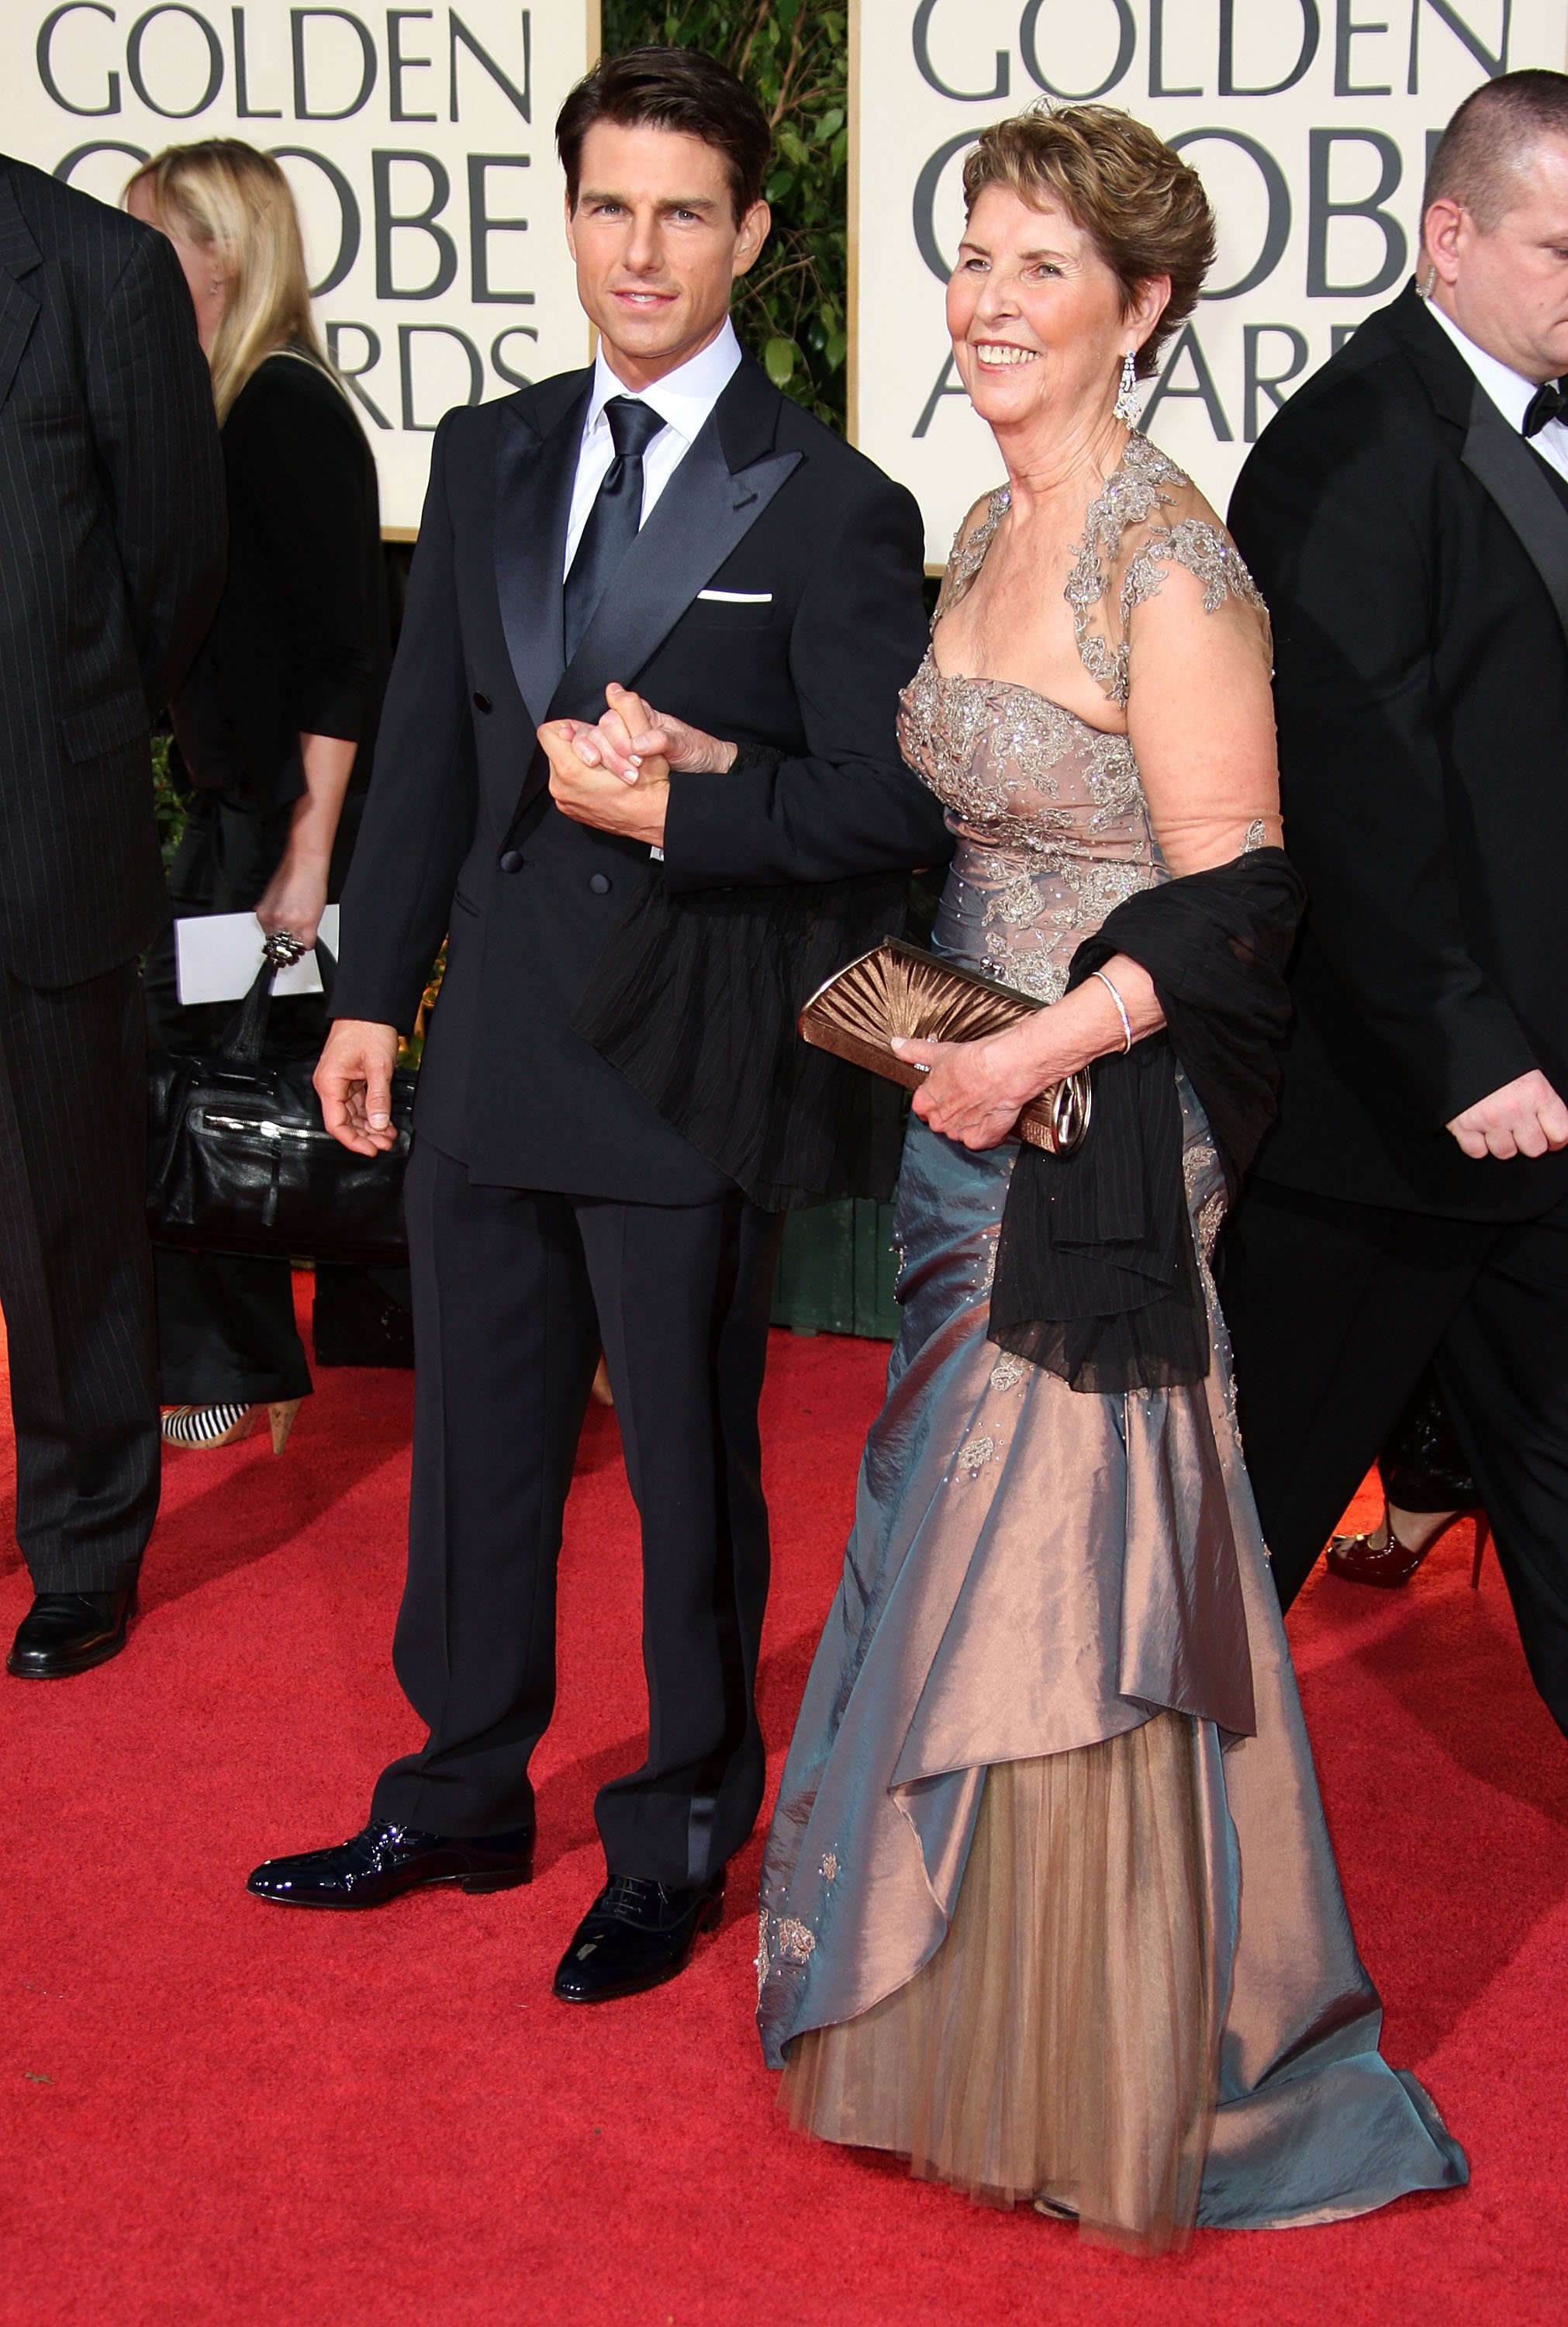 Tom Cruise arrive avec sa mère Mary Lee Pfeiffer à la 66e cérémonie annuelle des Golden Globe Awards qui s'est tenue à l'hôtel Beverly Hilton le 11 janvier 2009 à Beverly Hills, en Californie. | Source : Getty Images